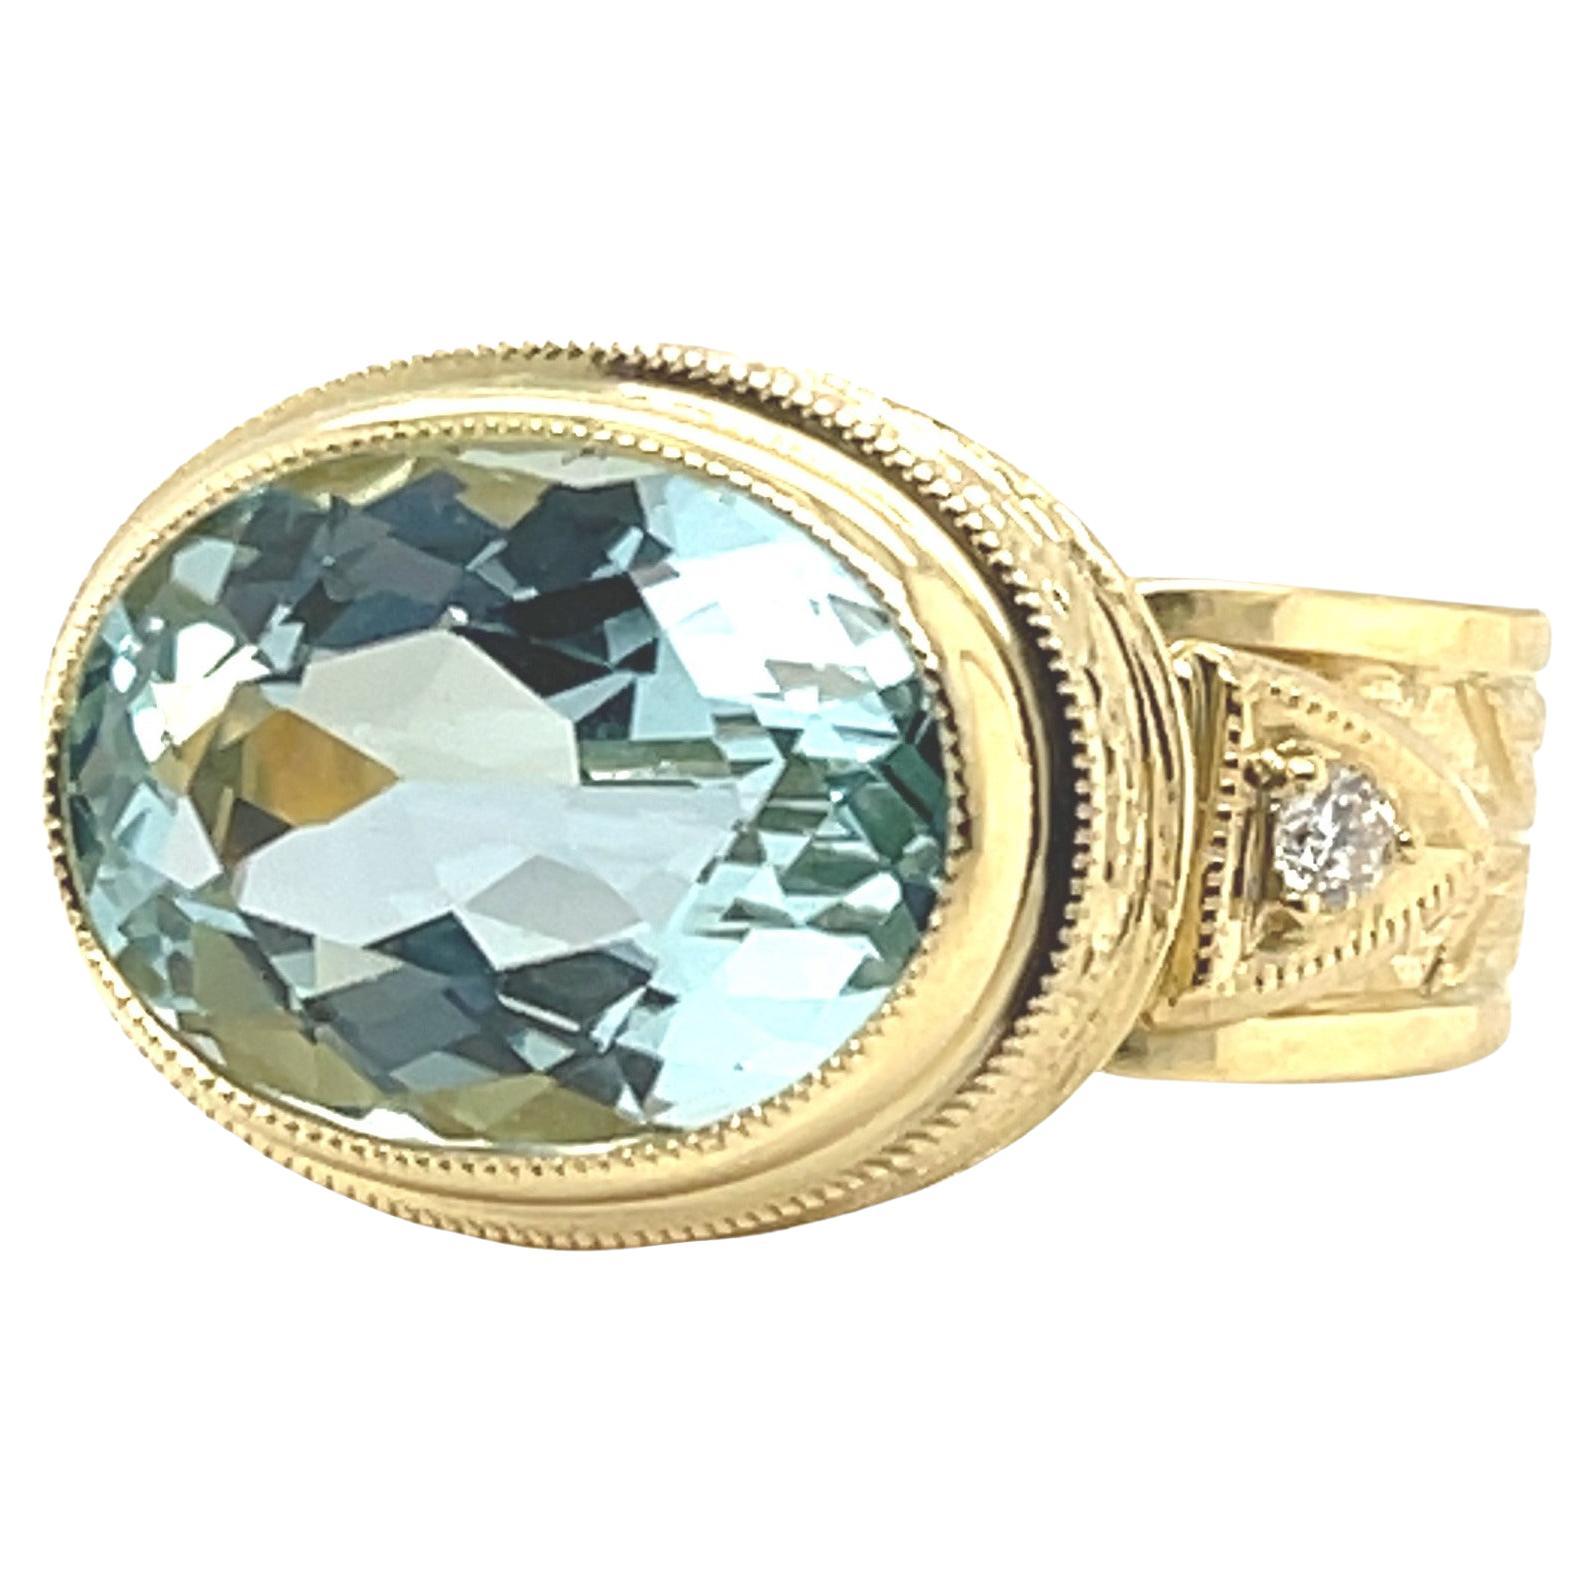 Dieser wunderschöne handgefertigte Ring zeigt einen funkelnden ovalen Aquamarin von 6,16 Karat, der in 18 Karat Gelbgold mit Diamanten gefasst ist! Der Mittelstein hat die klassische Aquamarinfarbe - ein helles, kristallines Blau, das leicht als